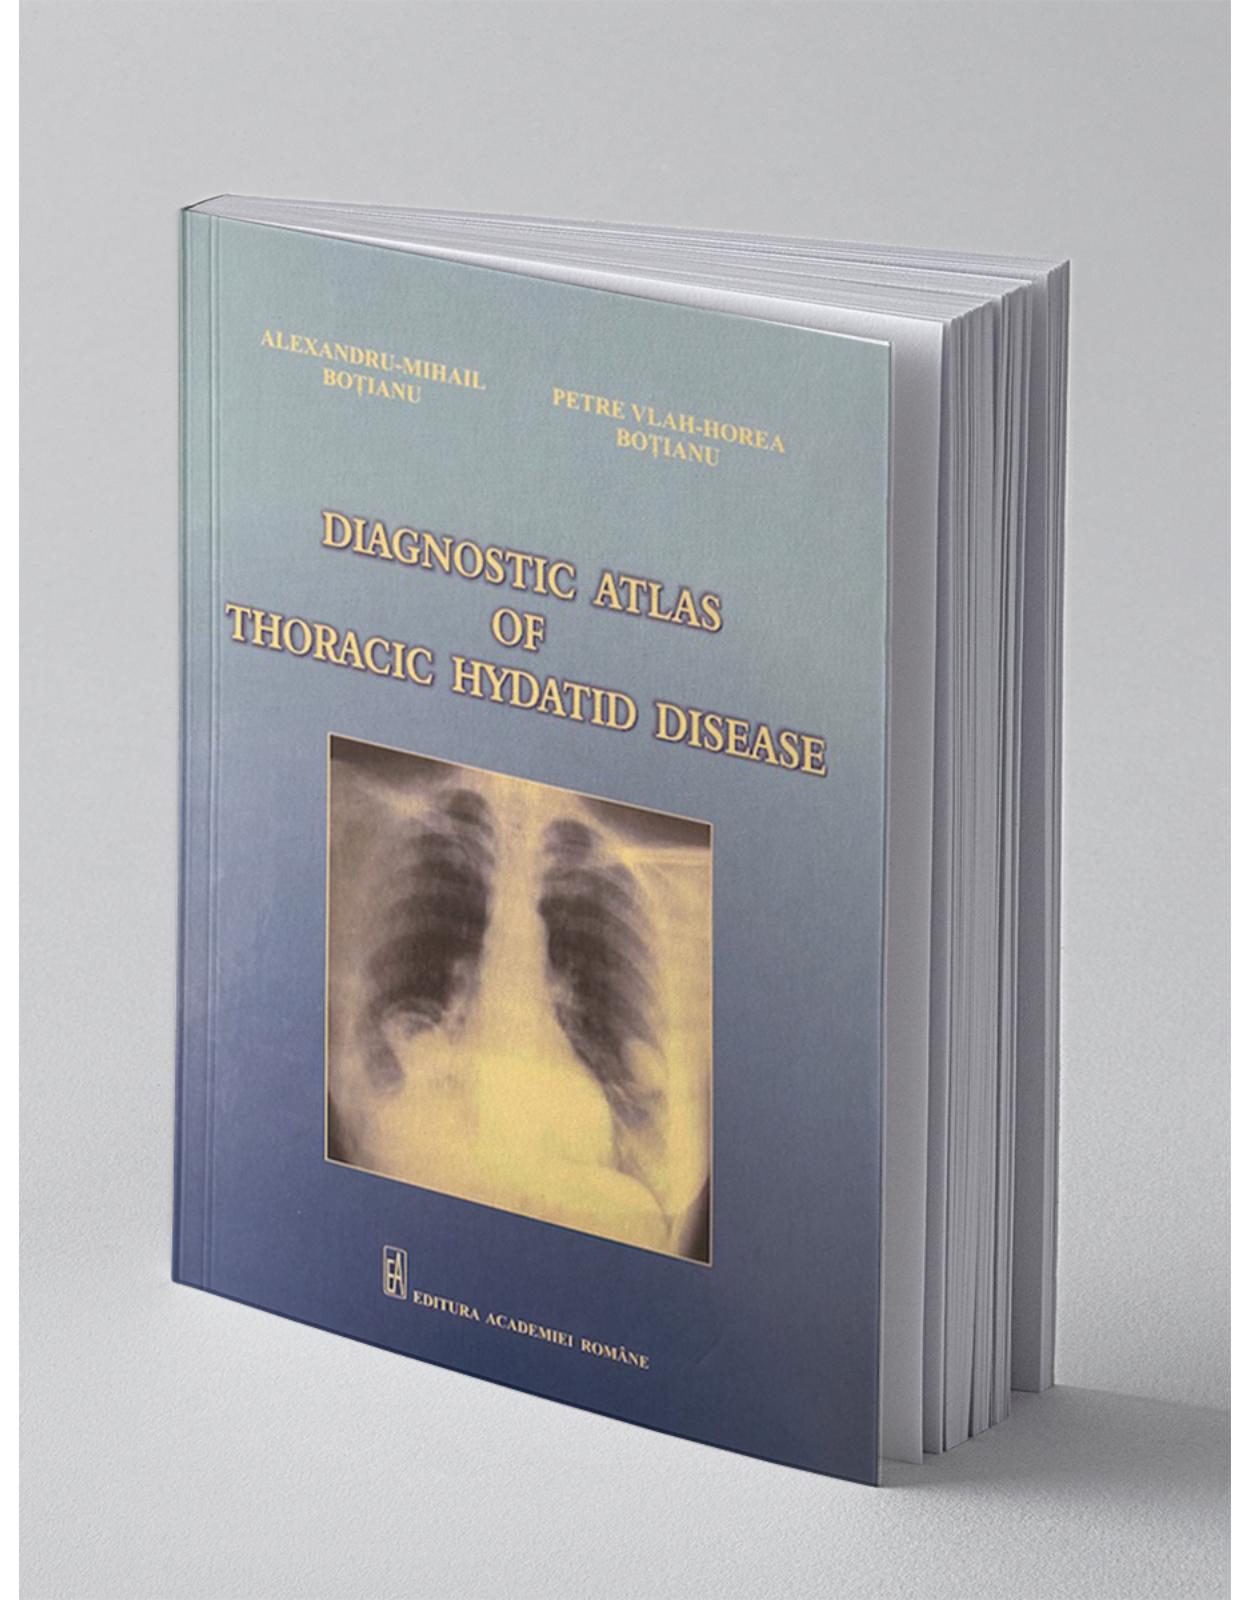 Diagnostic atlas of thoracic hydatid disease